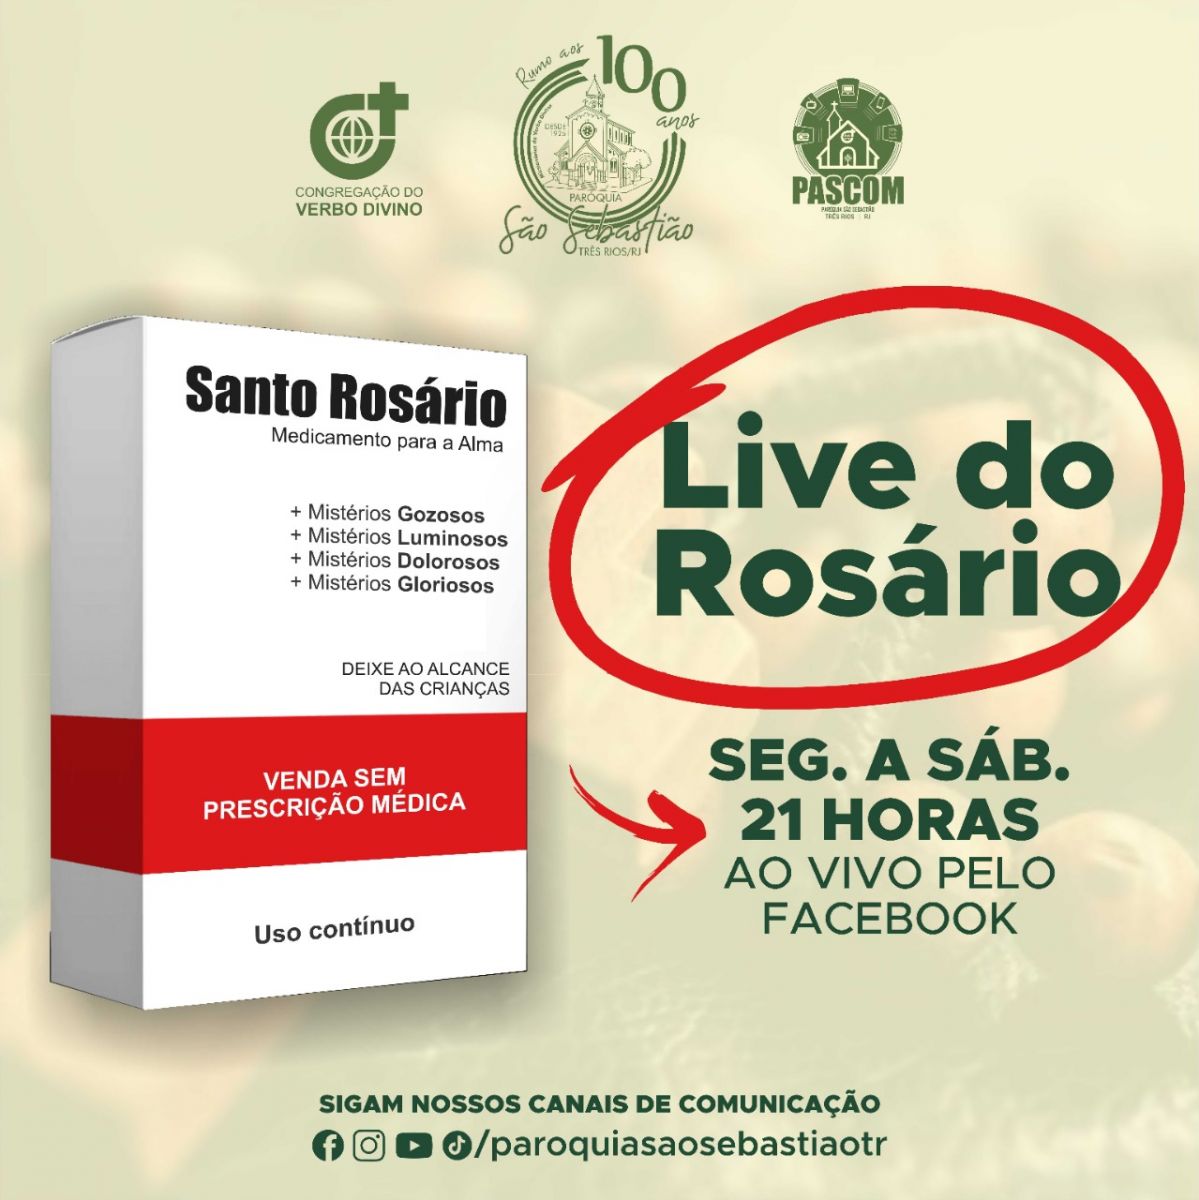 Fonte: Paróquia São Sebastião TR